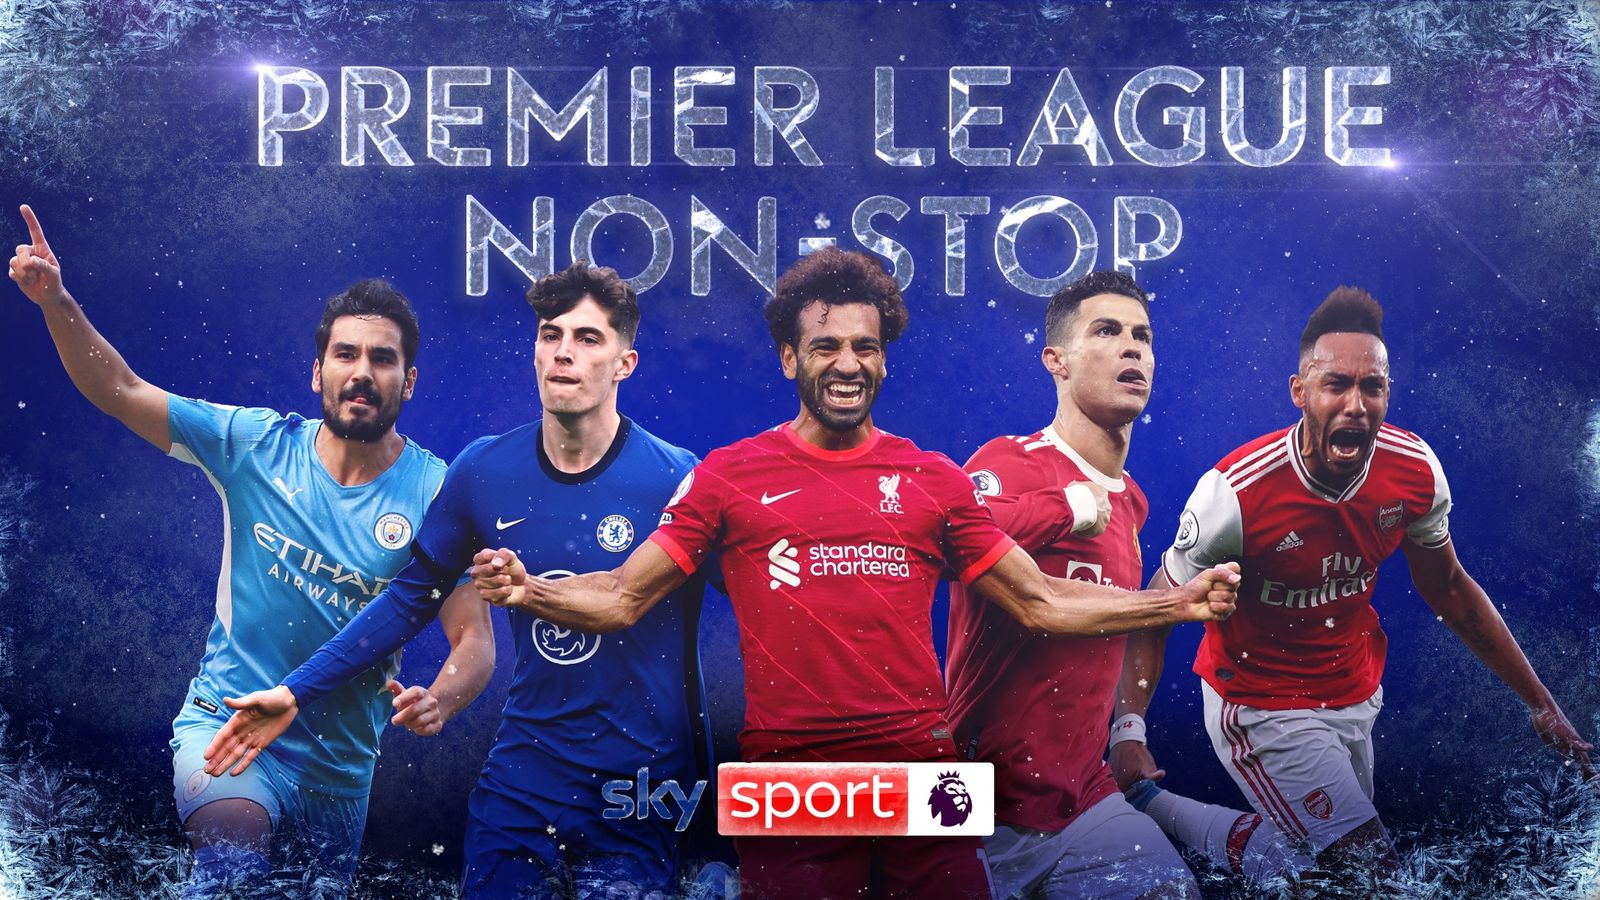 Sky Sport beschert Fans exklusiven Premier League Pop-up Channel zu Festtagen Fußball News Sky Sport